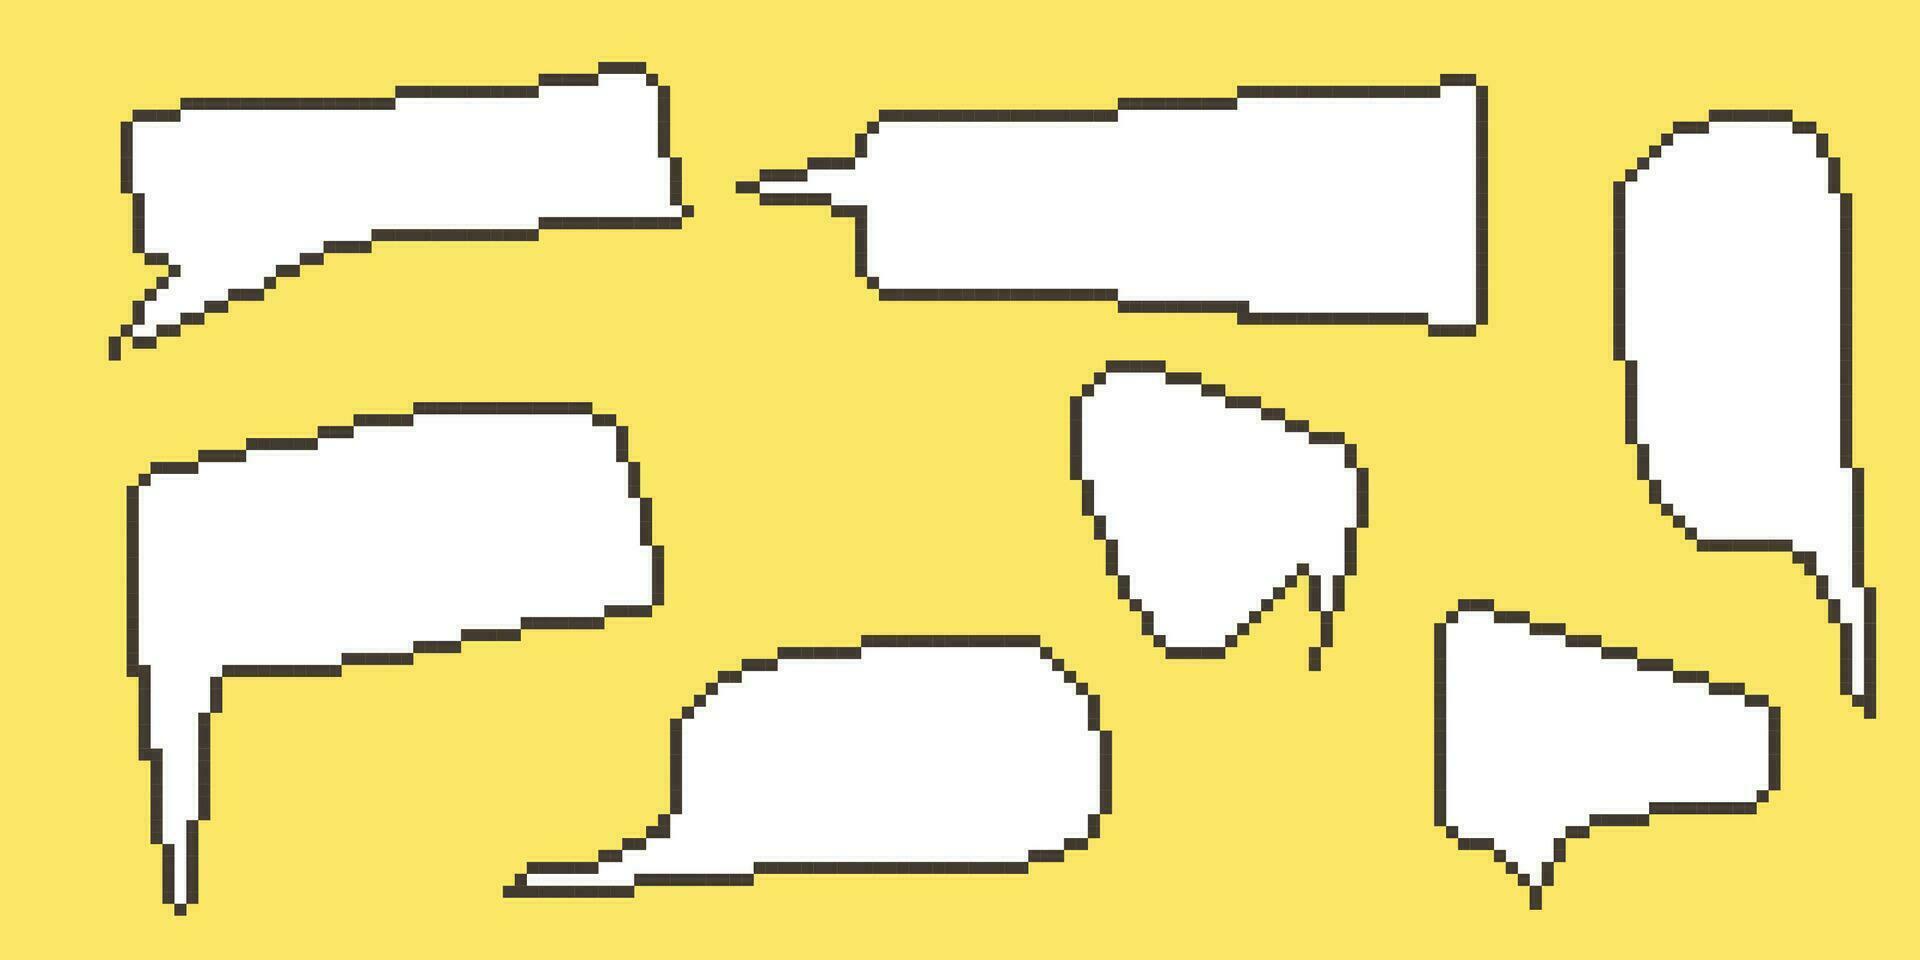 píxel habla burbuja colección gráfico diálogo cajas retro juego 8 poco línea texto caja. amarillo, negro y blanco color vacío pixelado mensaje bar. citar nube marcos plano diseño vector ilustración